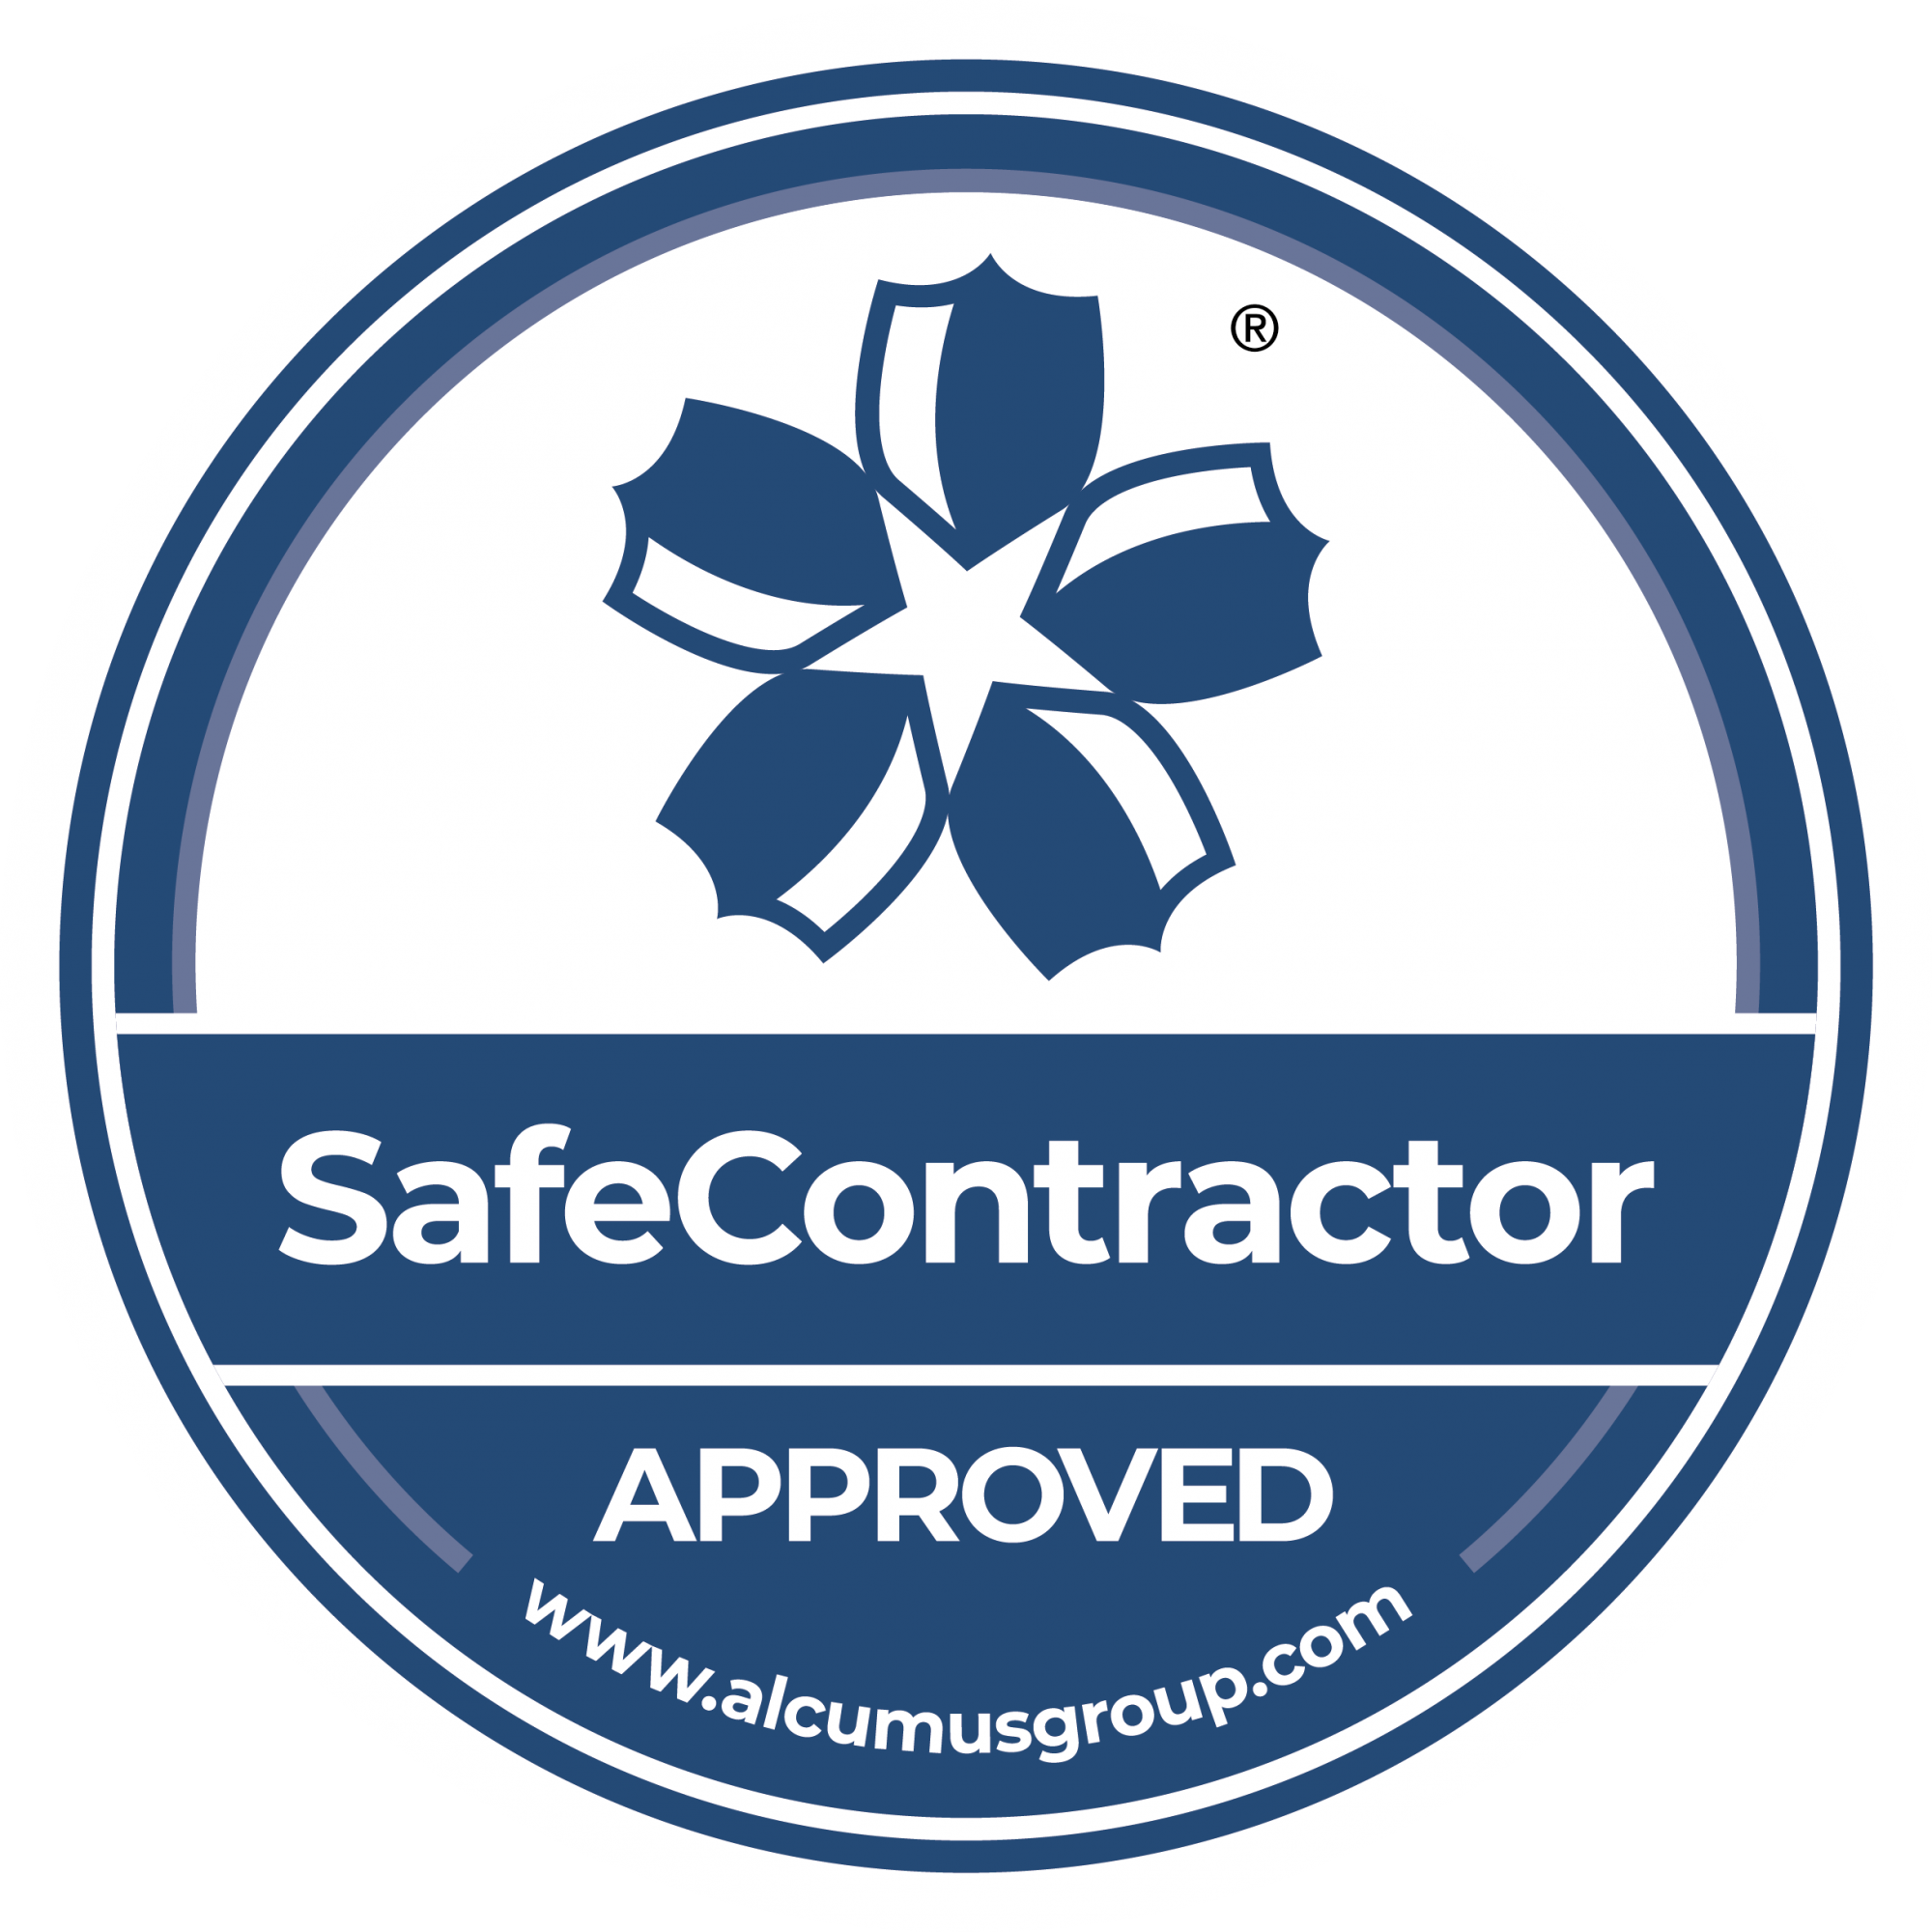 SafeContractor Certificate